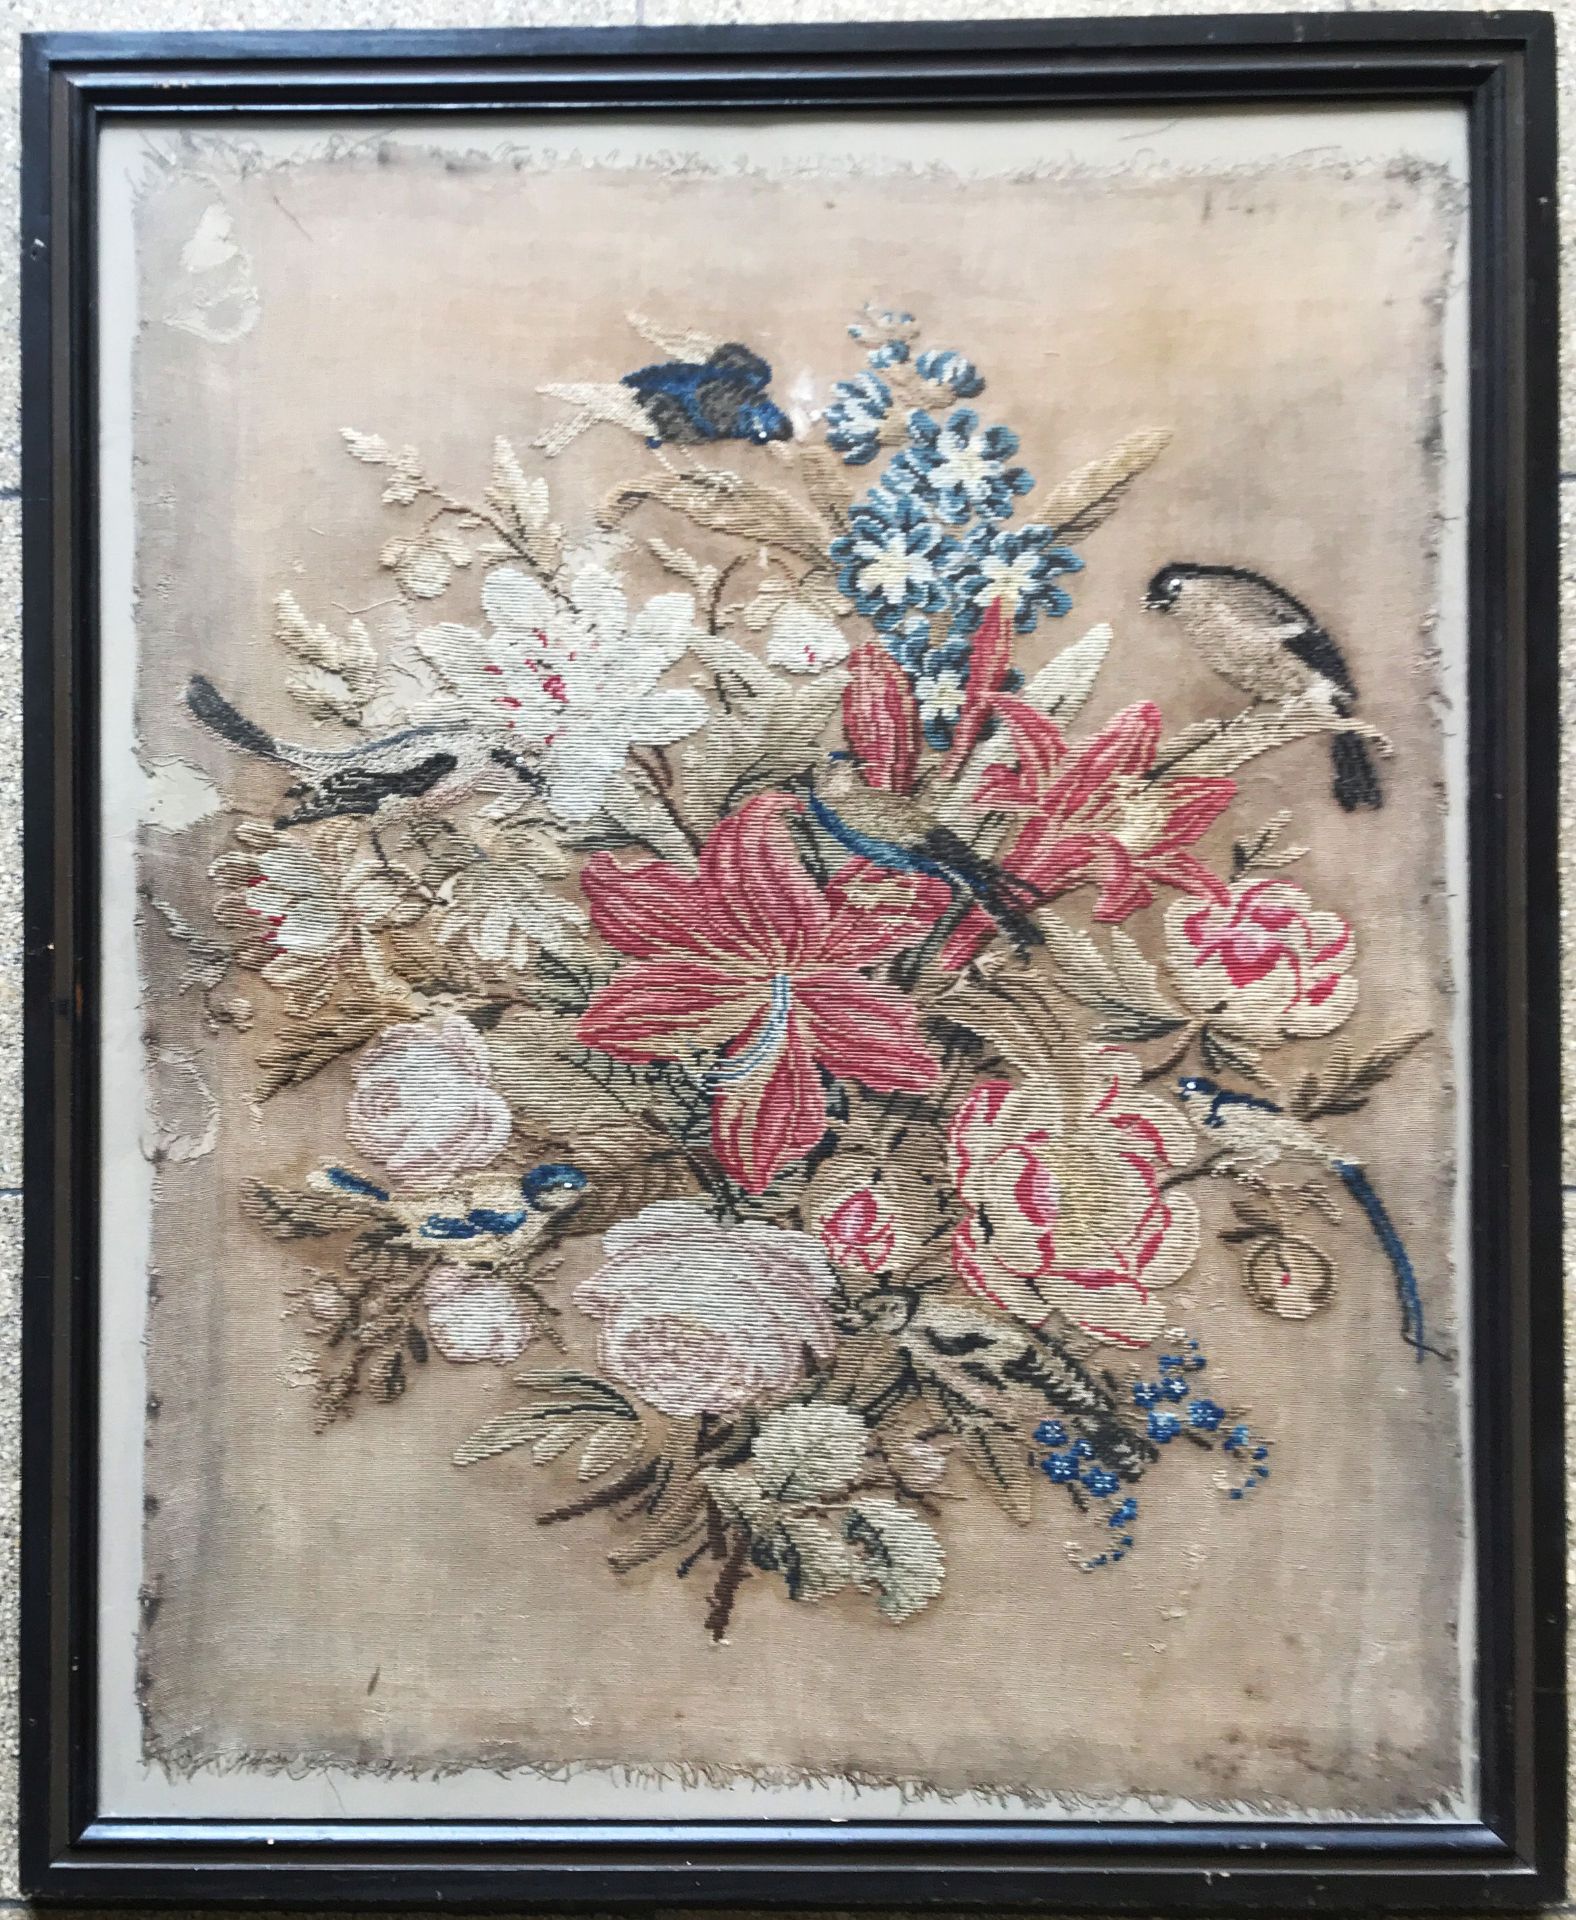 Stickbild mit Blumen und Vögeln auf grobem Leinen, 19. Jh., unter Glas gerahmt, urspr. aufgez.,